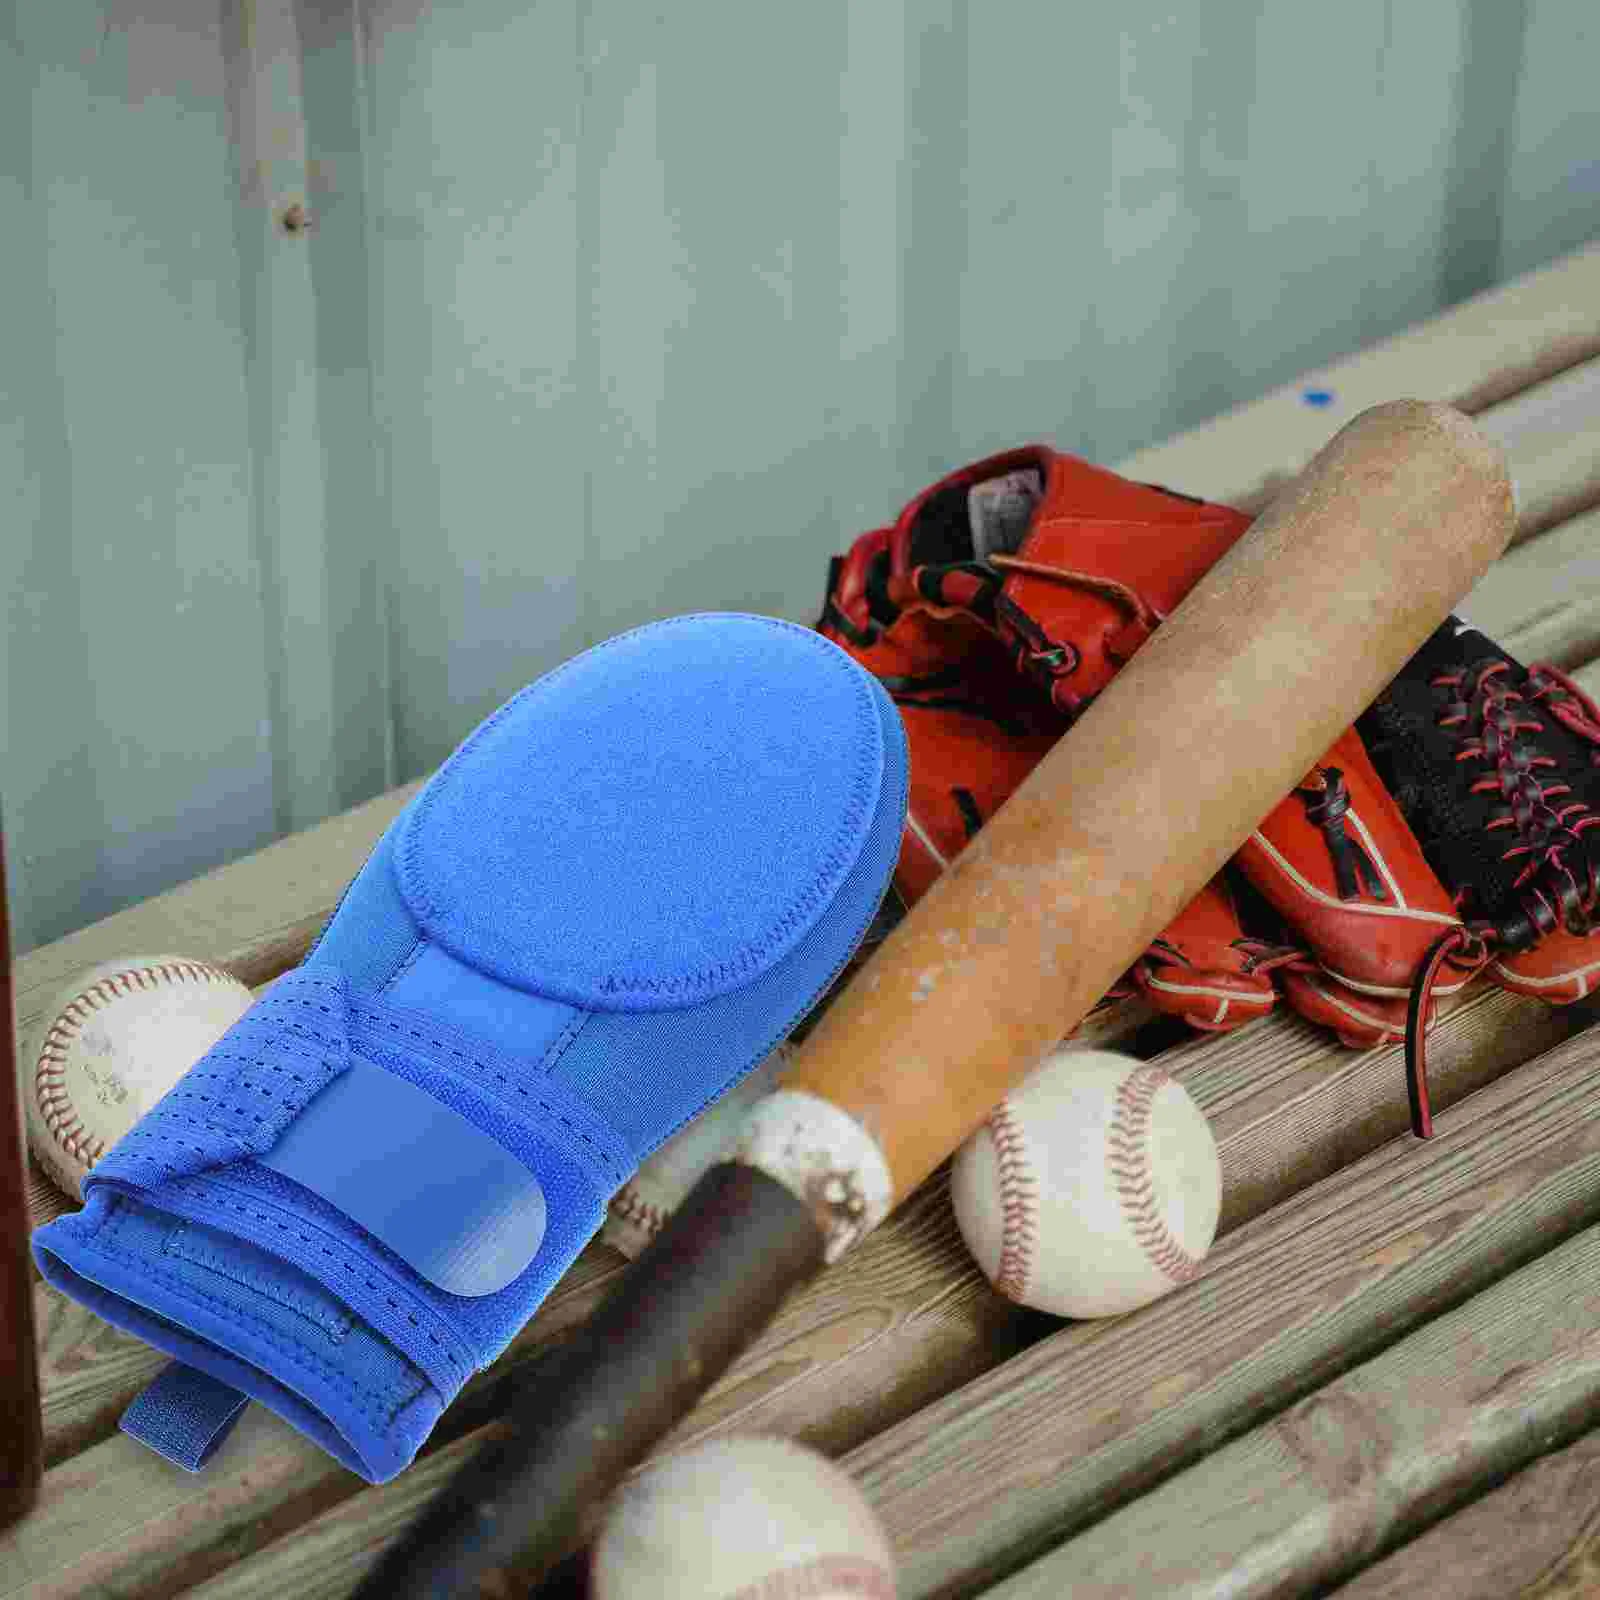 

Baseball Glove Slide Sliding Gloves Mitt Mitten for Sport Mitts Training Running